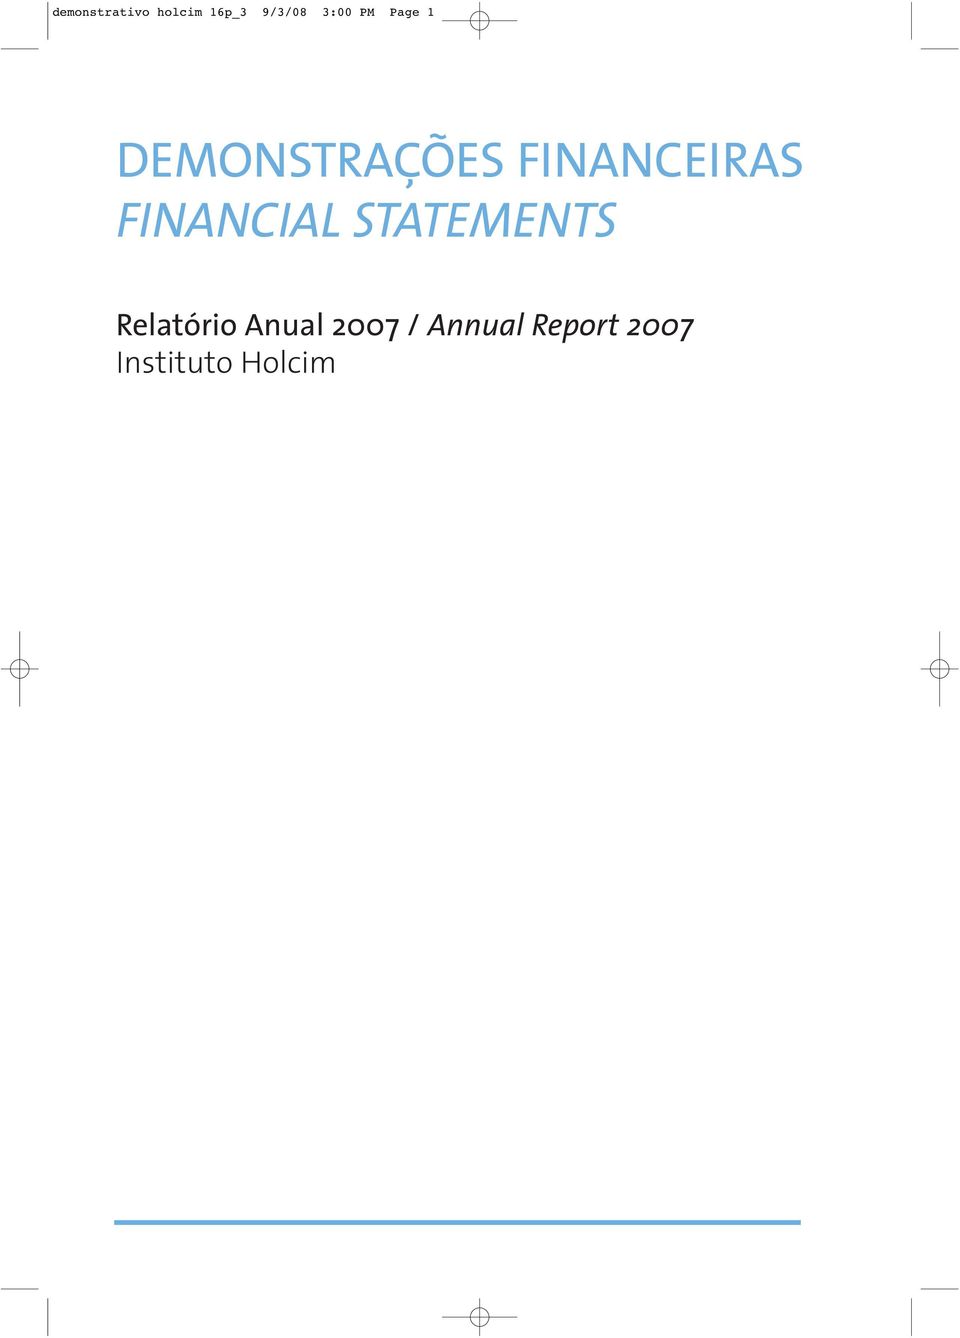 FINANCIAL STATEMENTS Relatório Anual